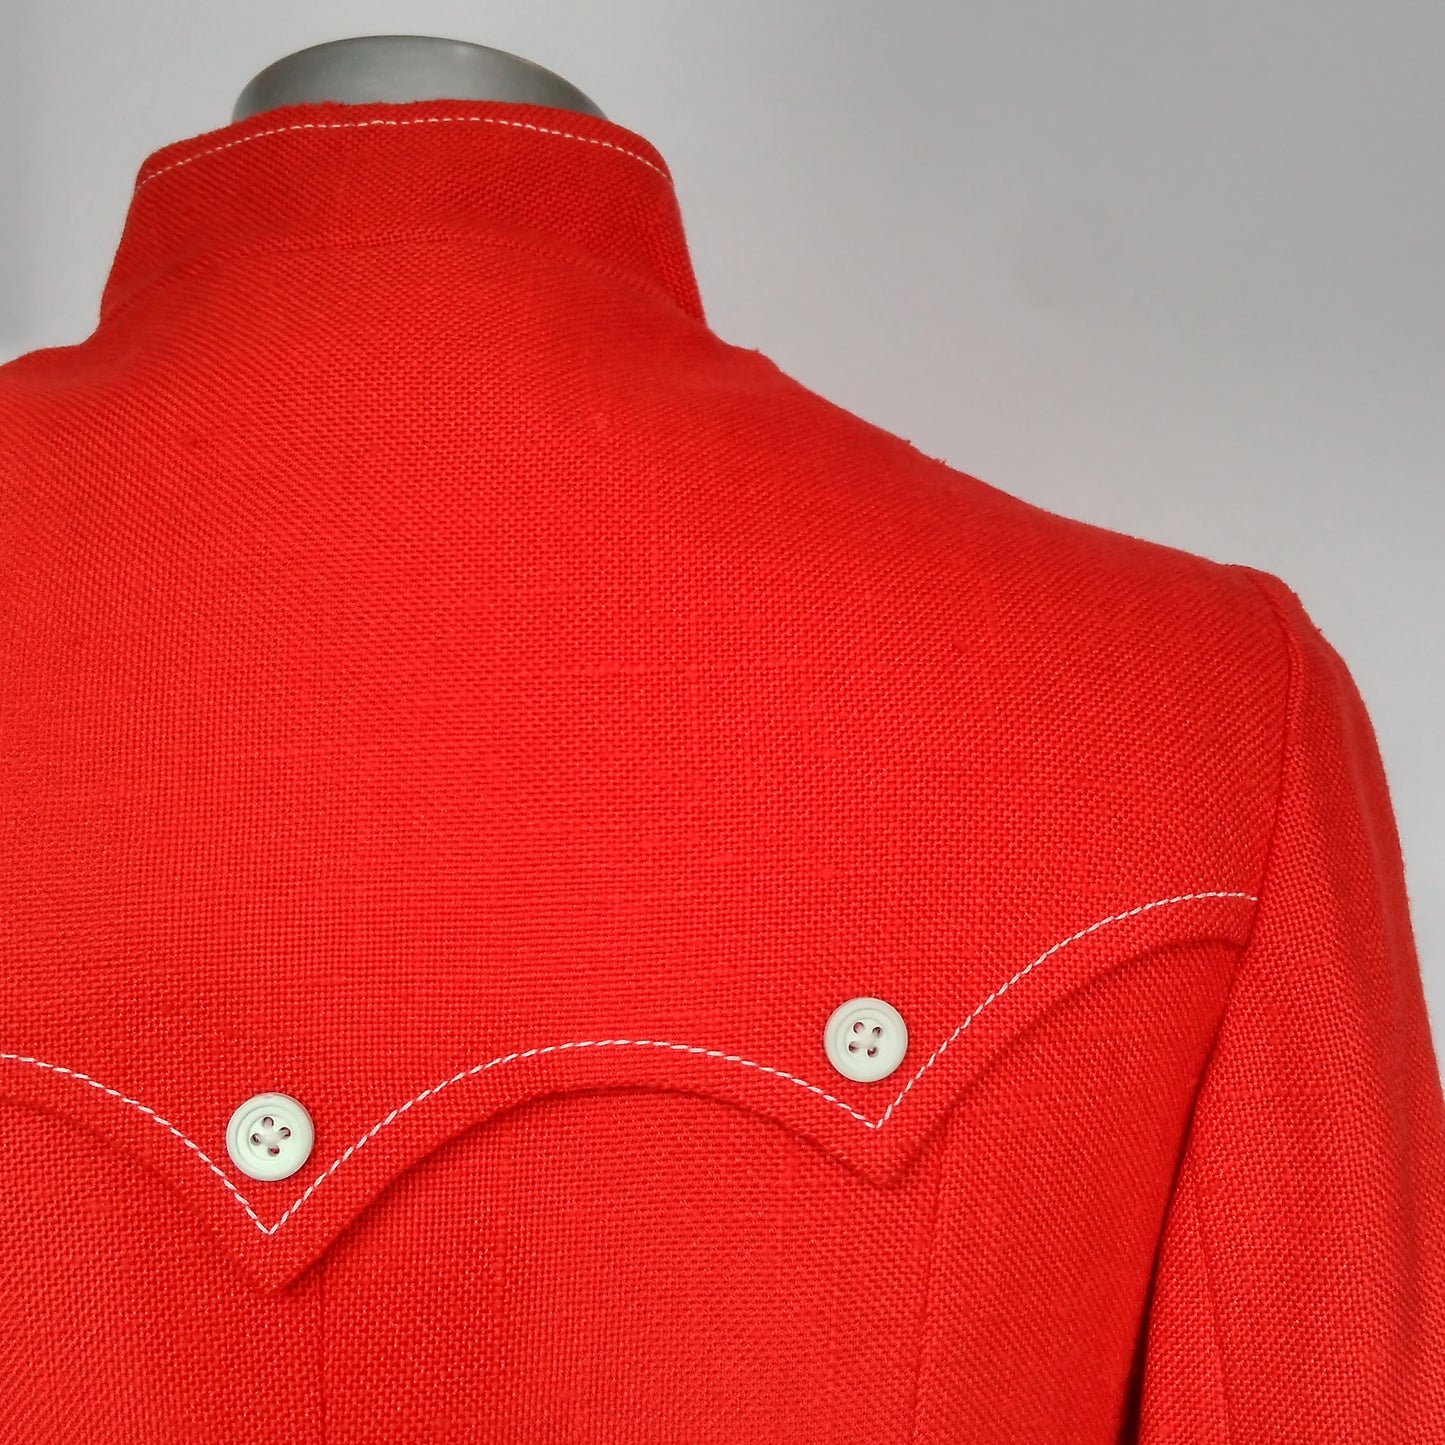 Red Linen Look 1960s Coat